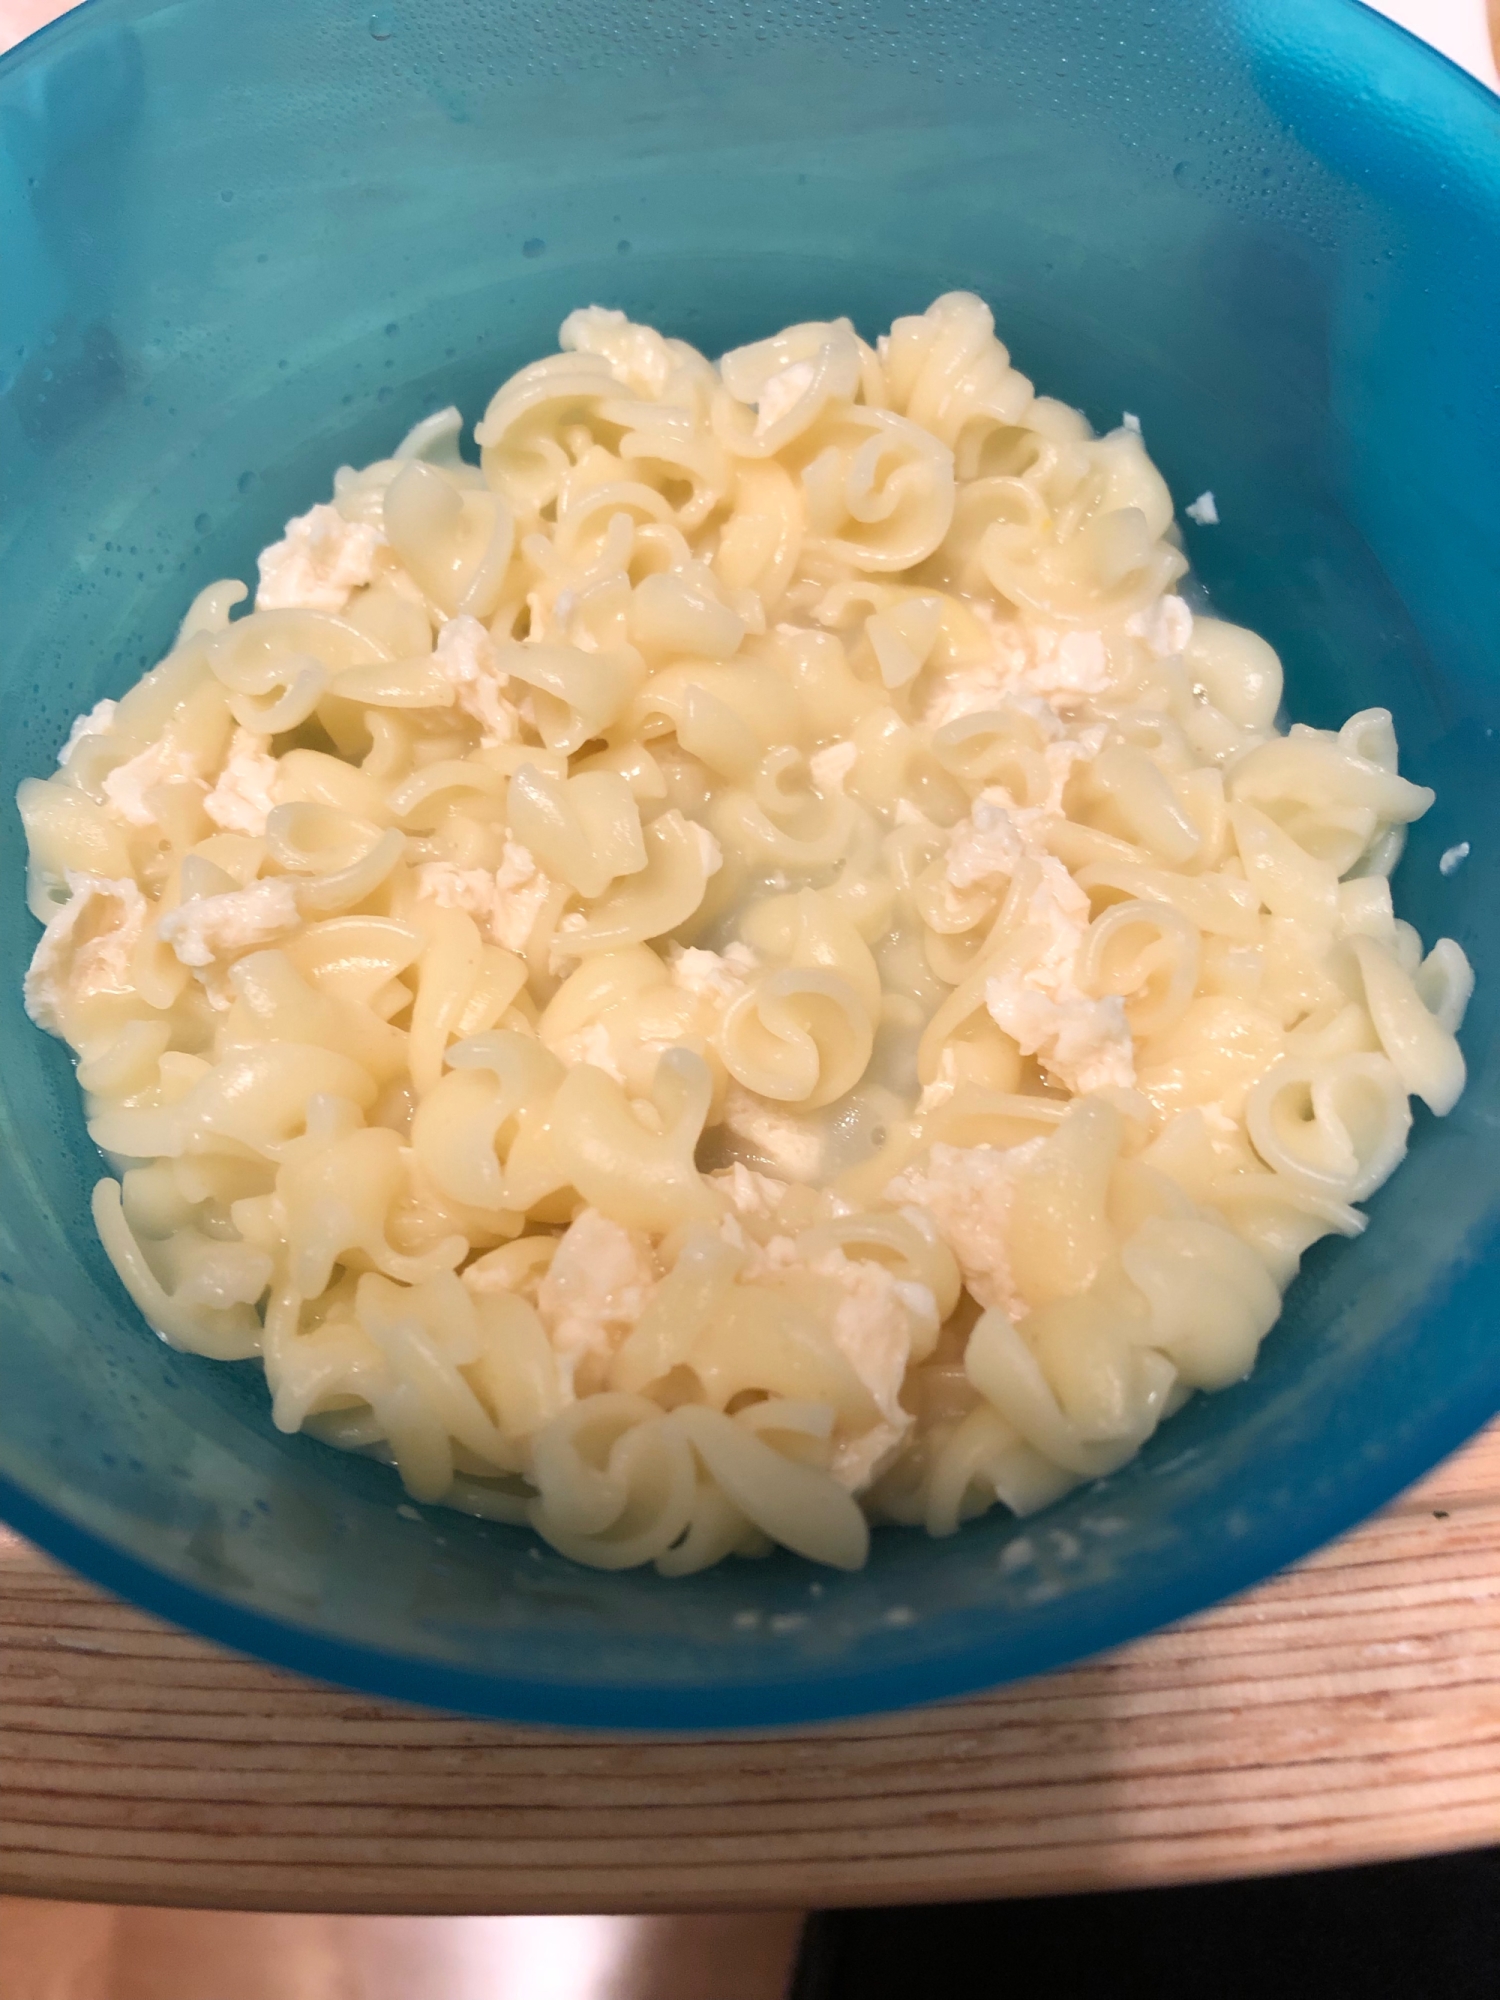 【離乳食完了期】豆腐チーズマカロニ